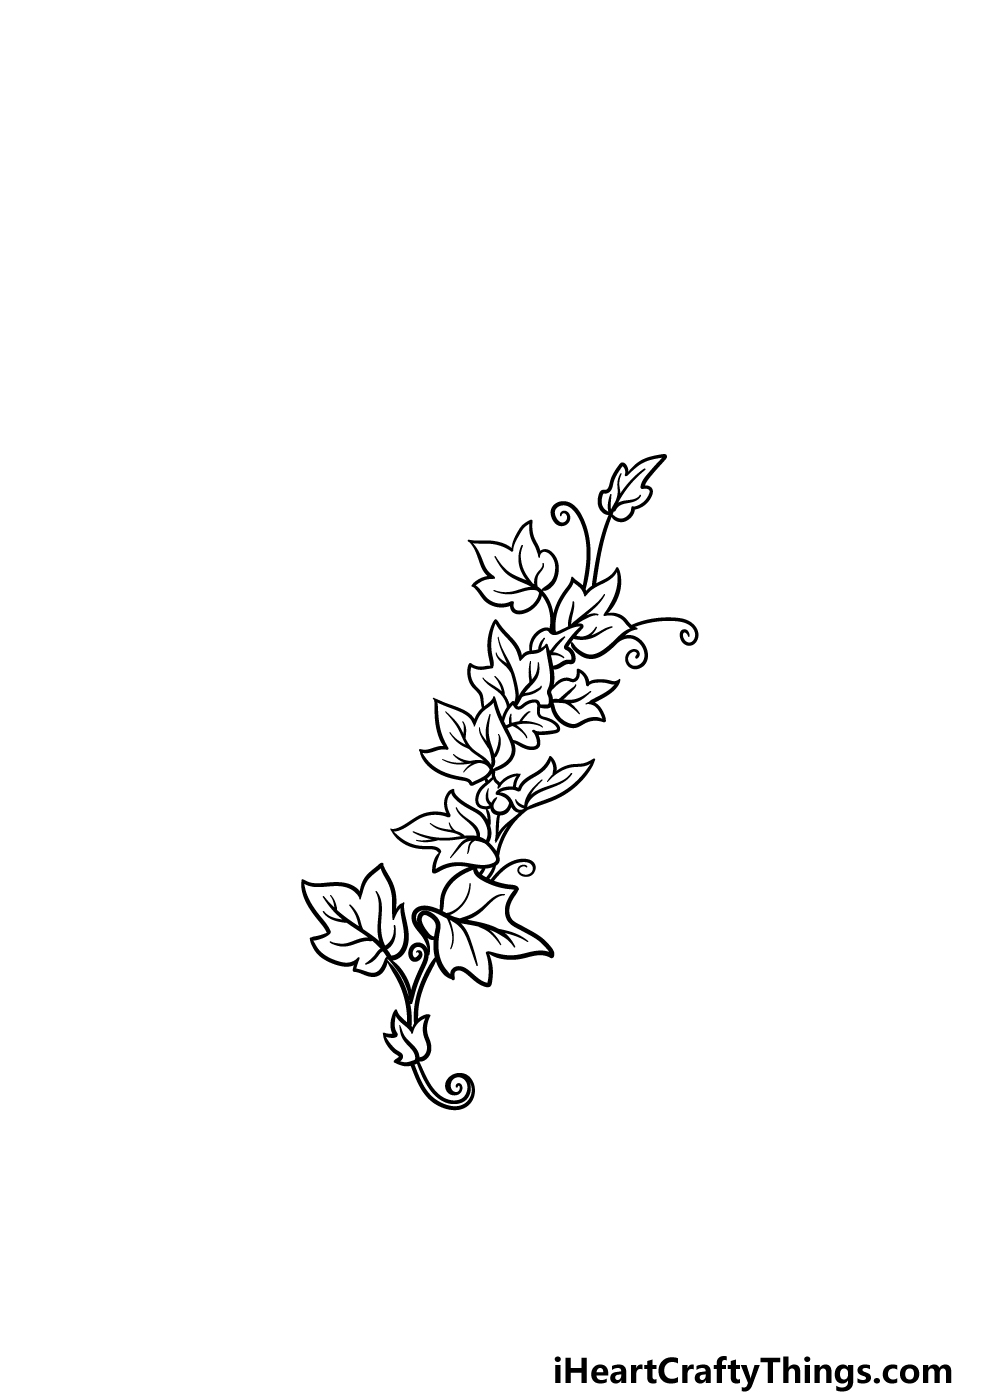 Simple Flower Vine Drawings